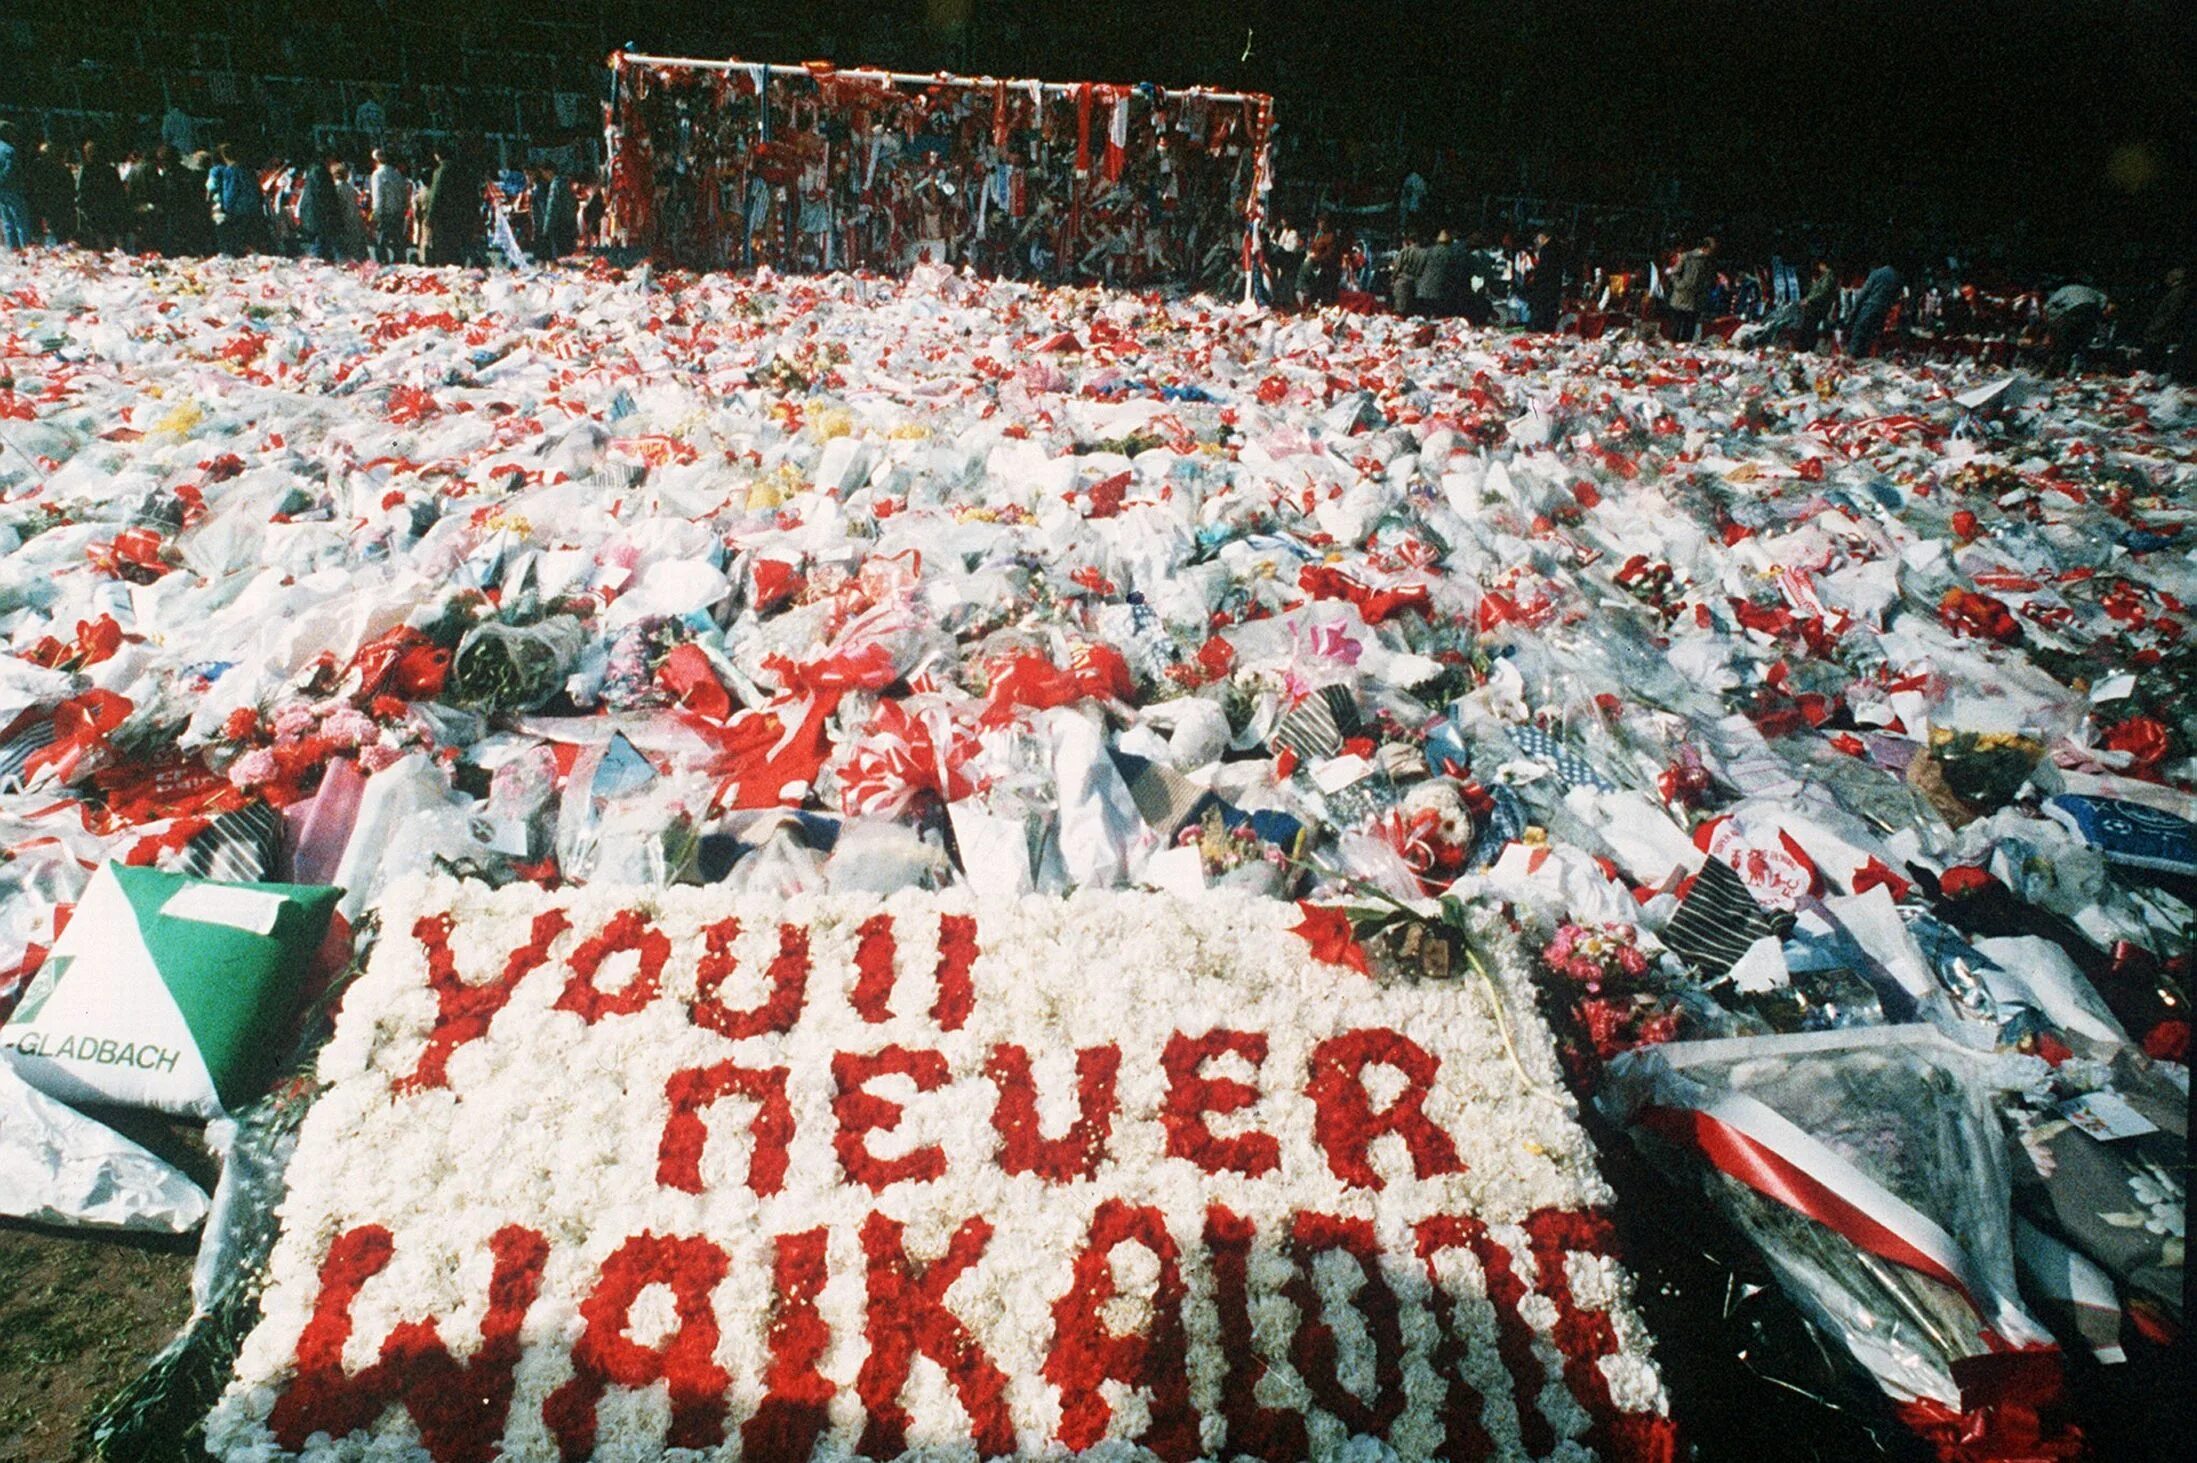 25 апреля 24 года. 15 Апреля 1989 года на стадионе «Хиллсборо» в Шеффилде. Трагедия в Хиллсборо Ливерпуль. Давка 1989 на стадионе Хиллсборо.